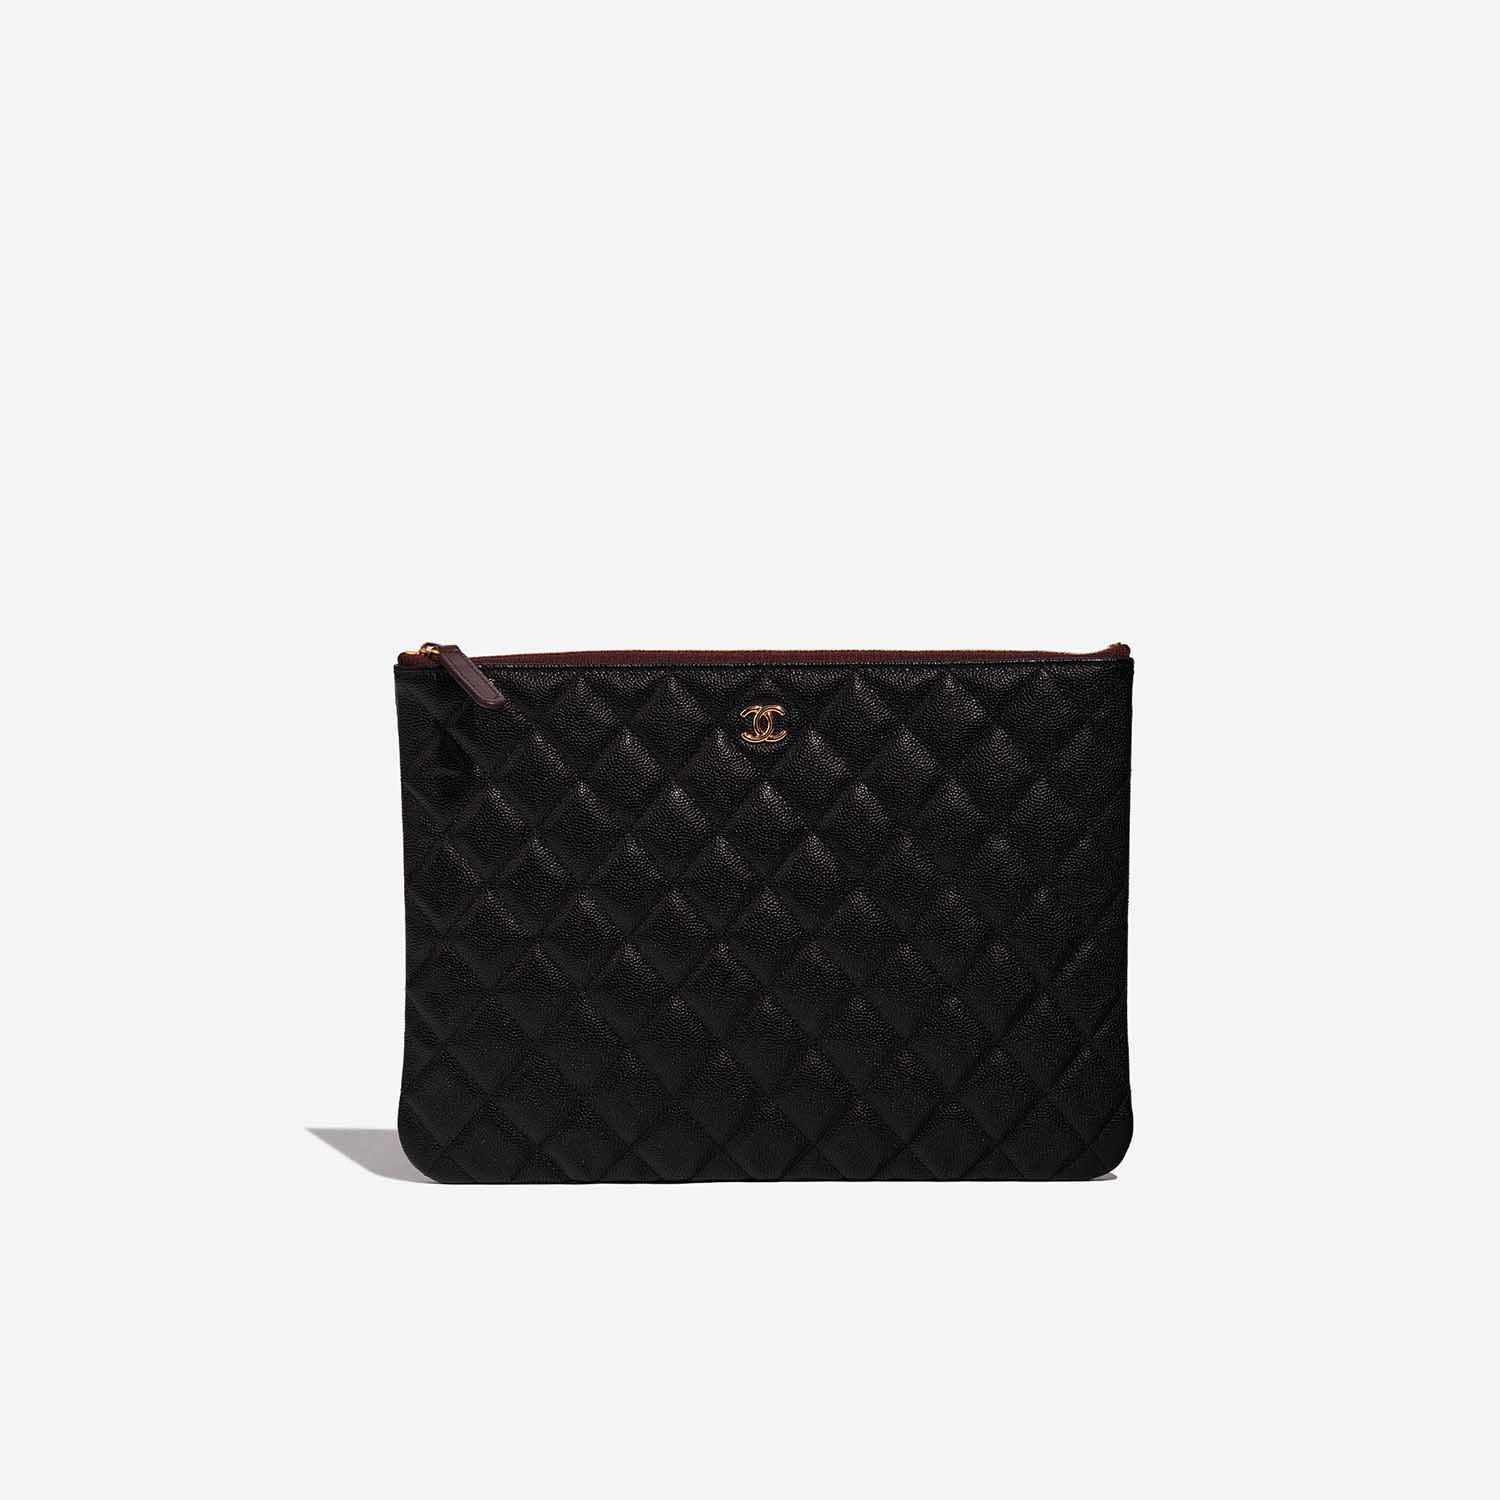 Sac Chanel d'occasion Classique Pochette Caviar Noir Noir Devant | Vendre votre sac de créateur sur Saclab.com